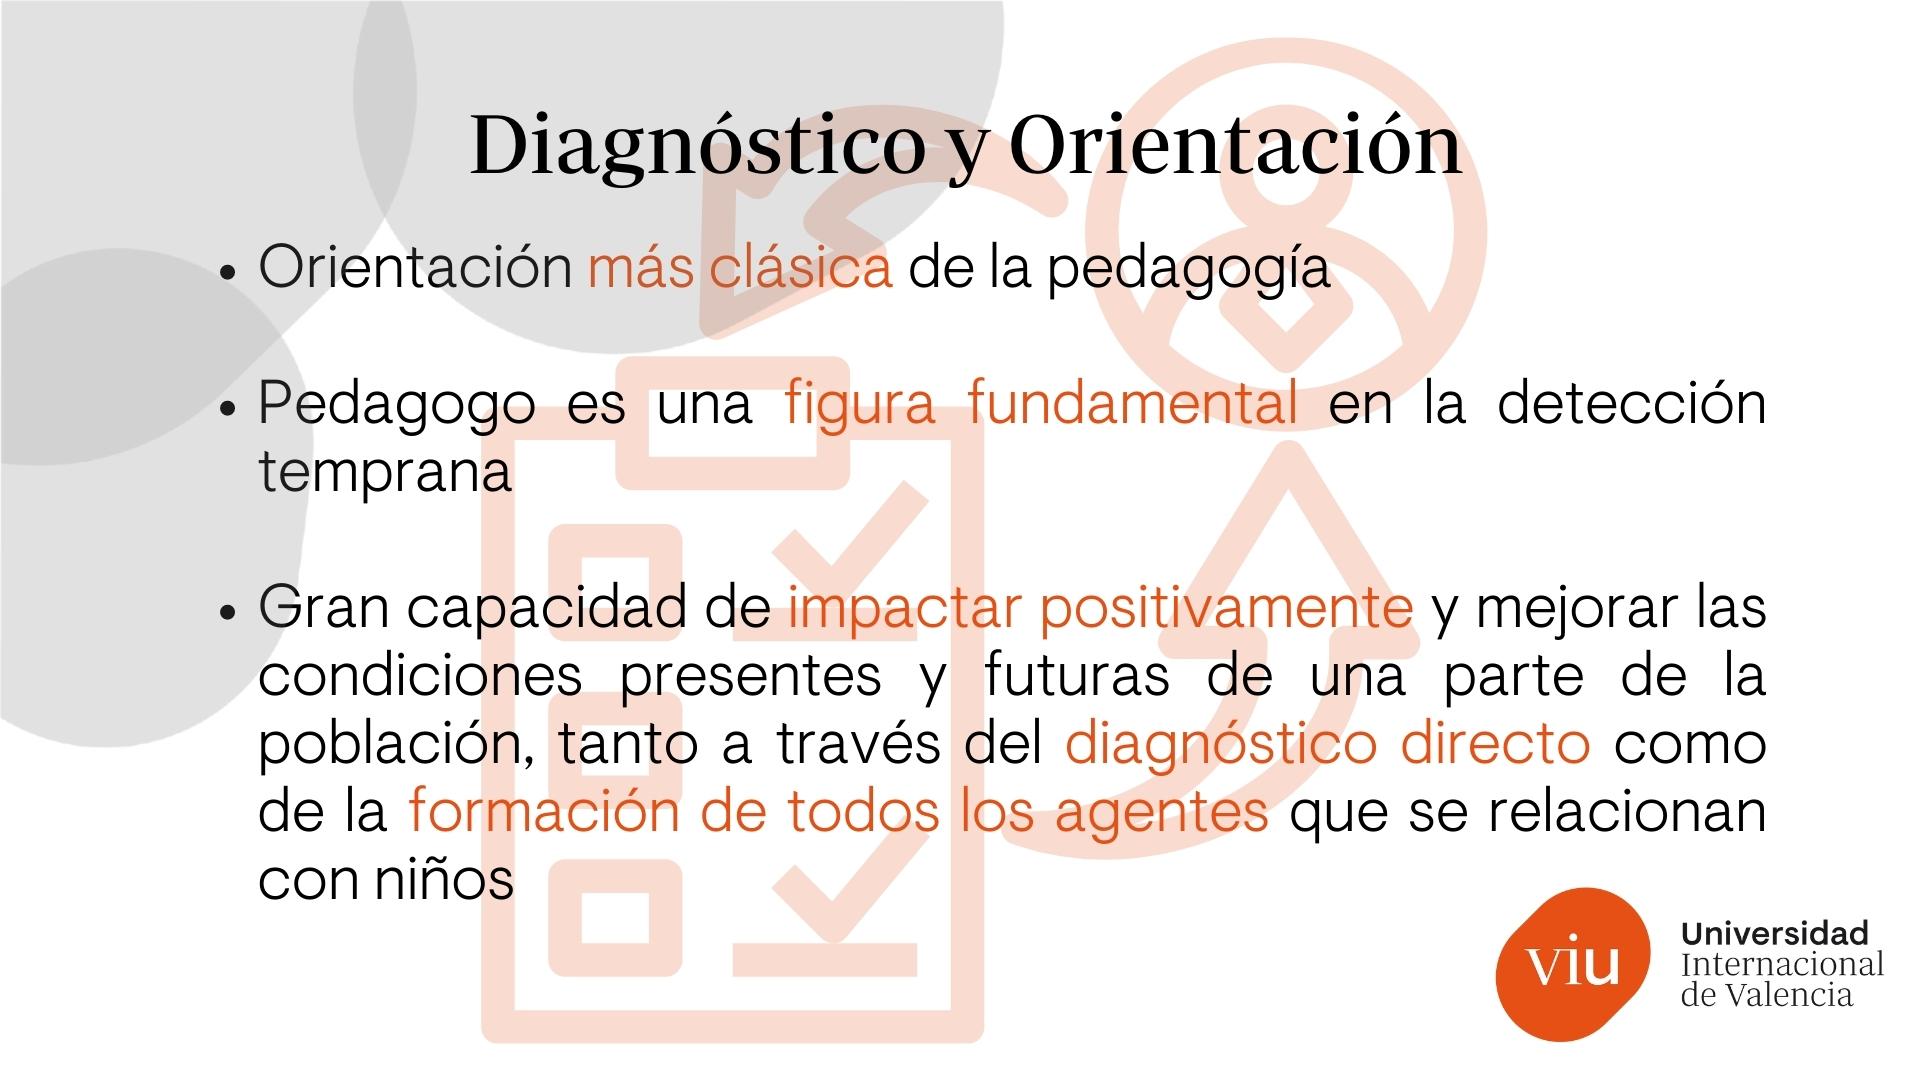 Diagnóstico y Orientación - Pedagogía